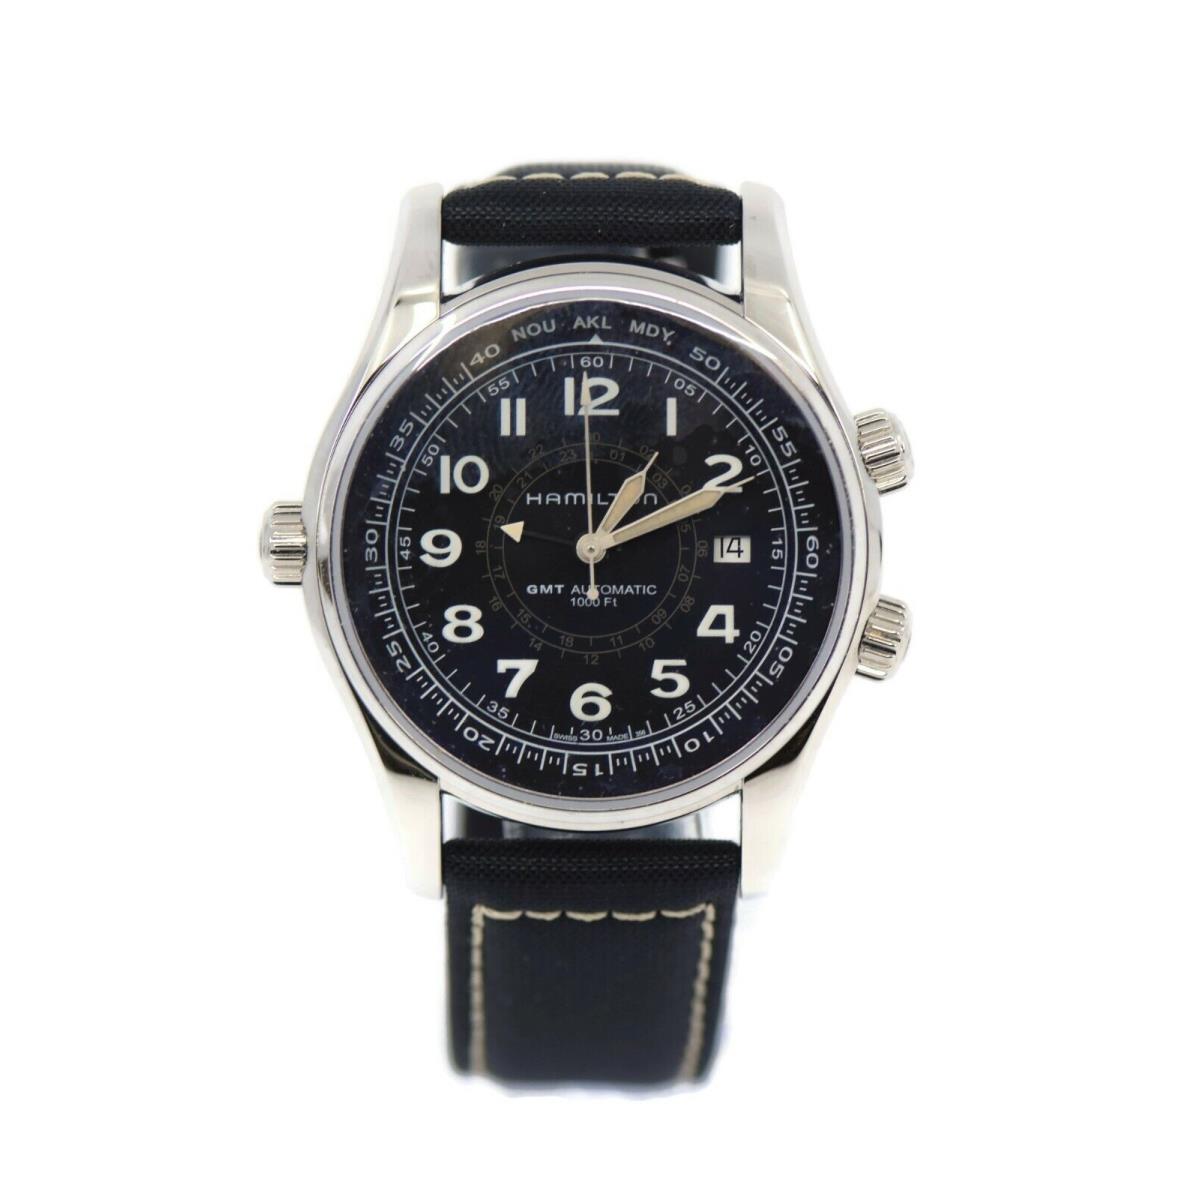 Hamilton Hamitlon Khaki Stainless Steel Watch H77505433